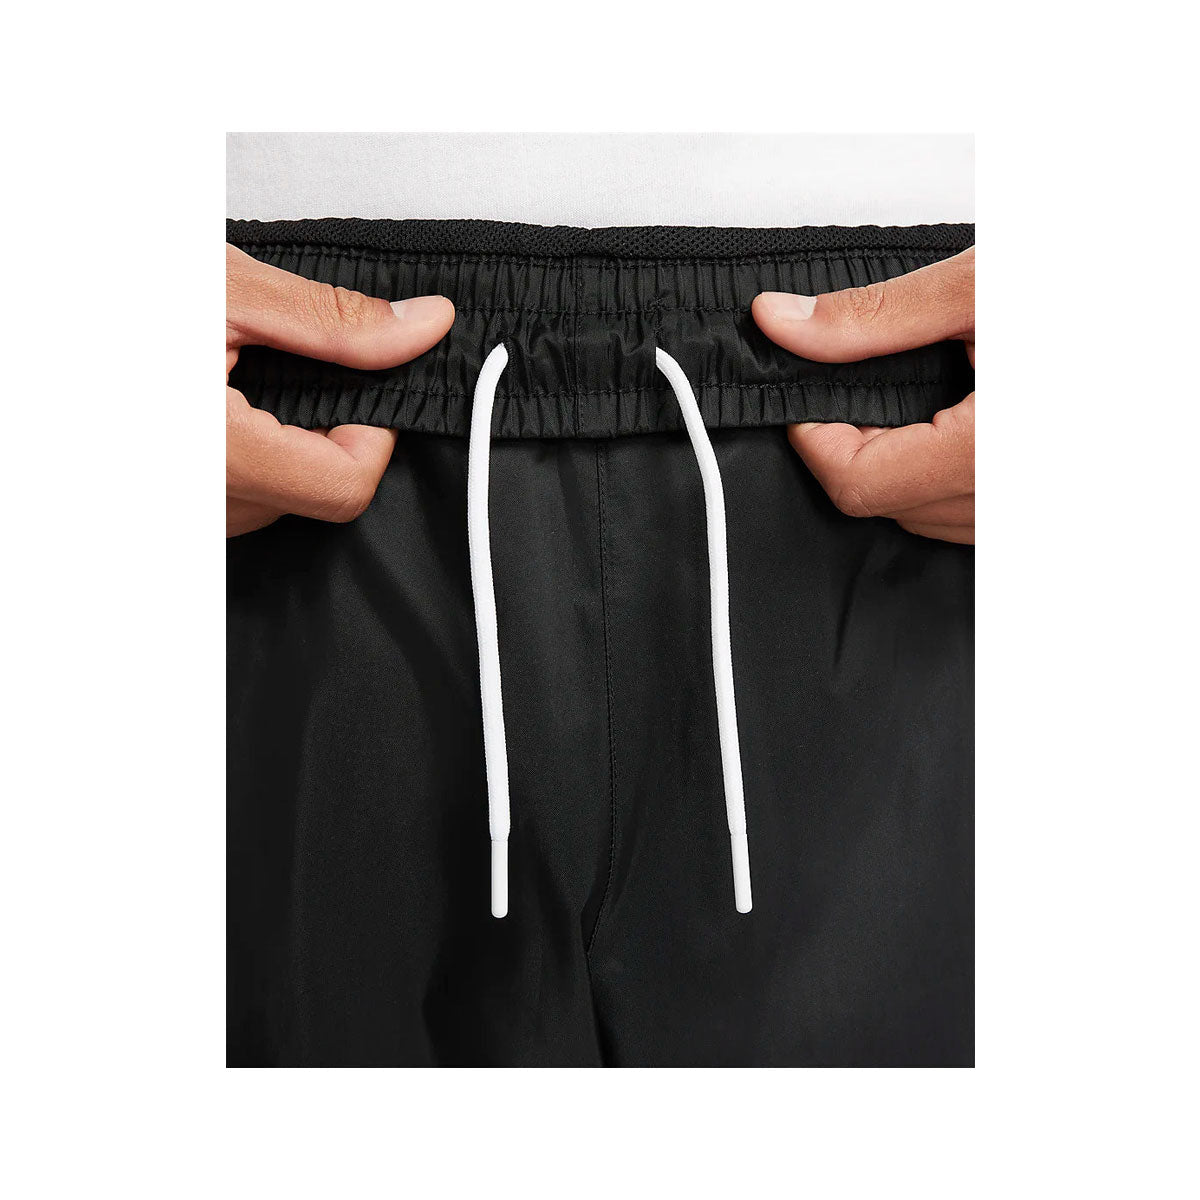 Nike Men's Windrunner Woven Lined Black Pants